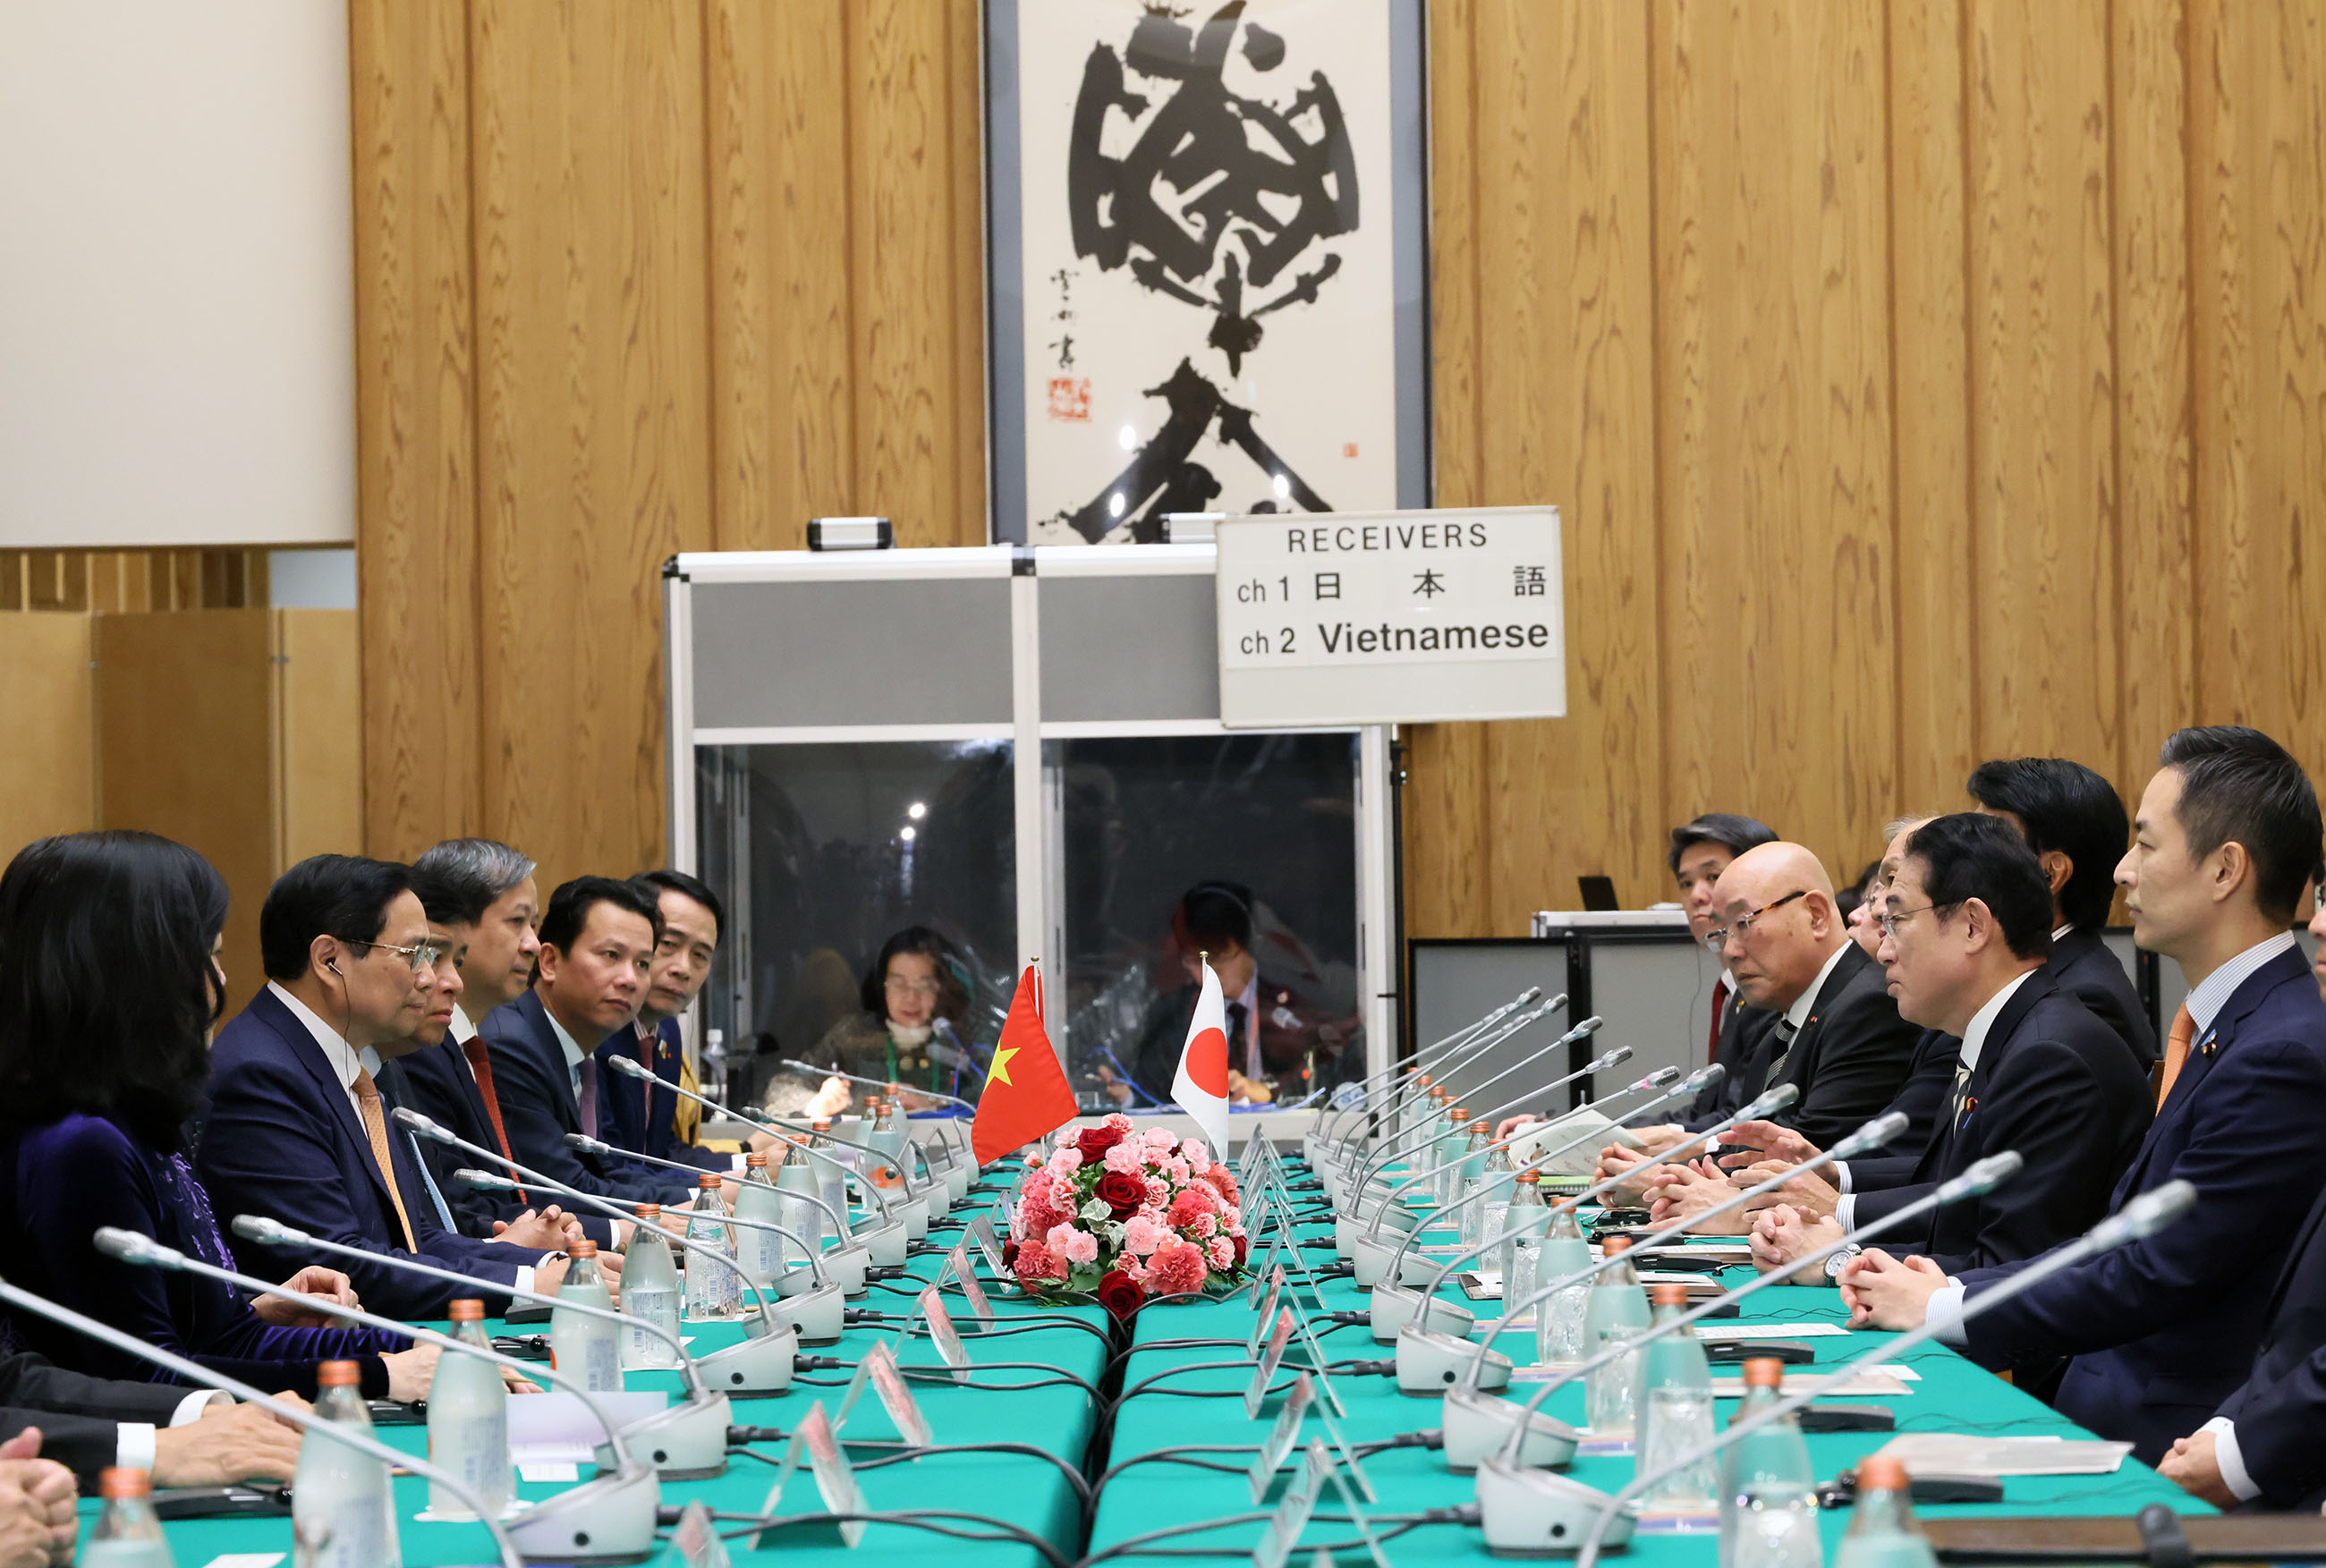 Japan-Viet Nam Summit meeting